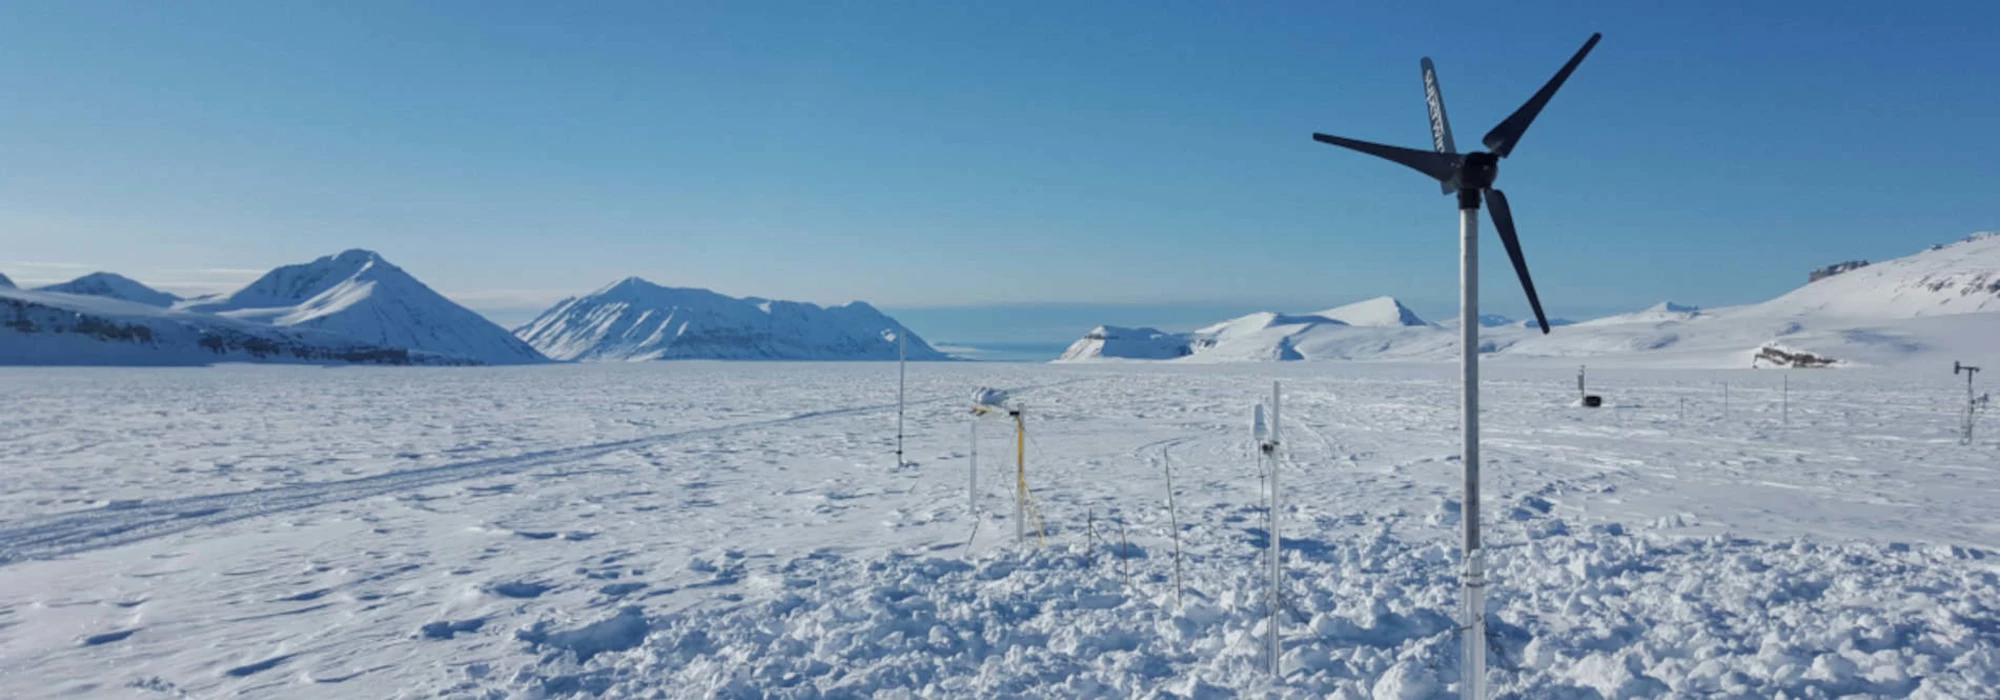 Windenergieanlage SW 353 vor arktischer Winterkulisse